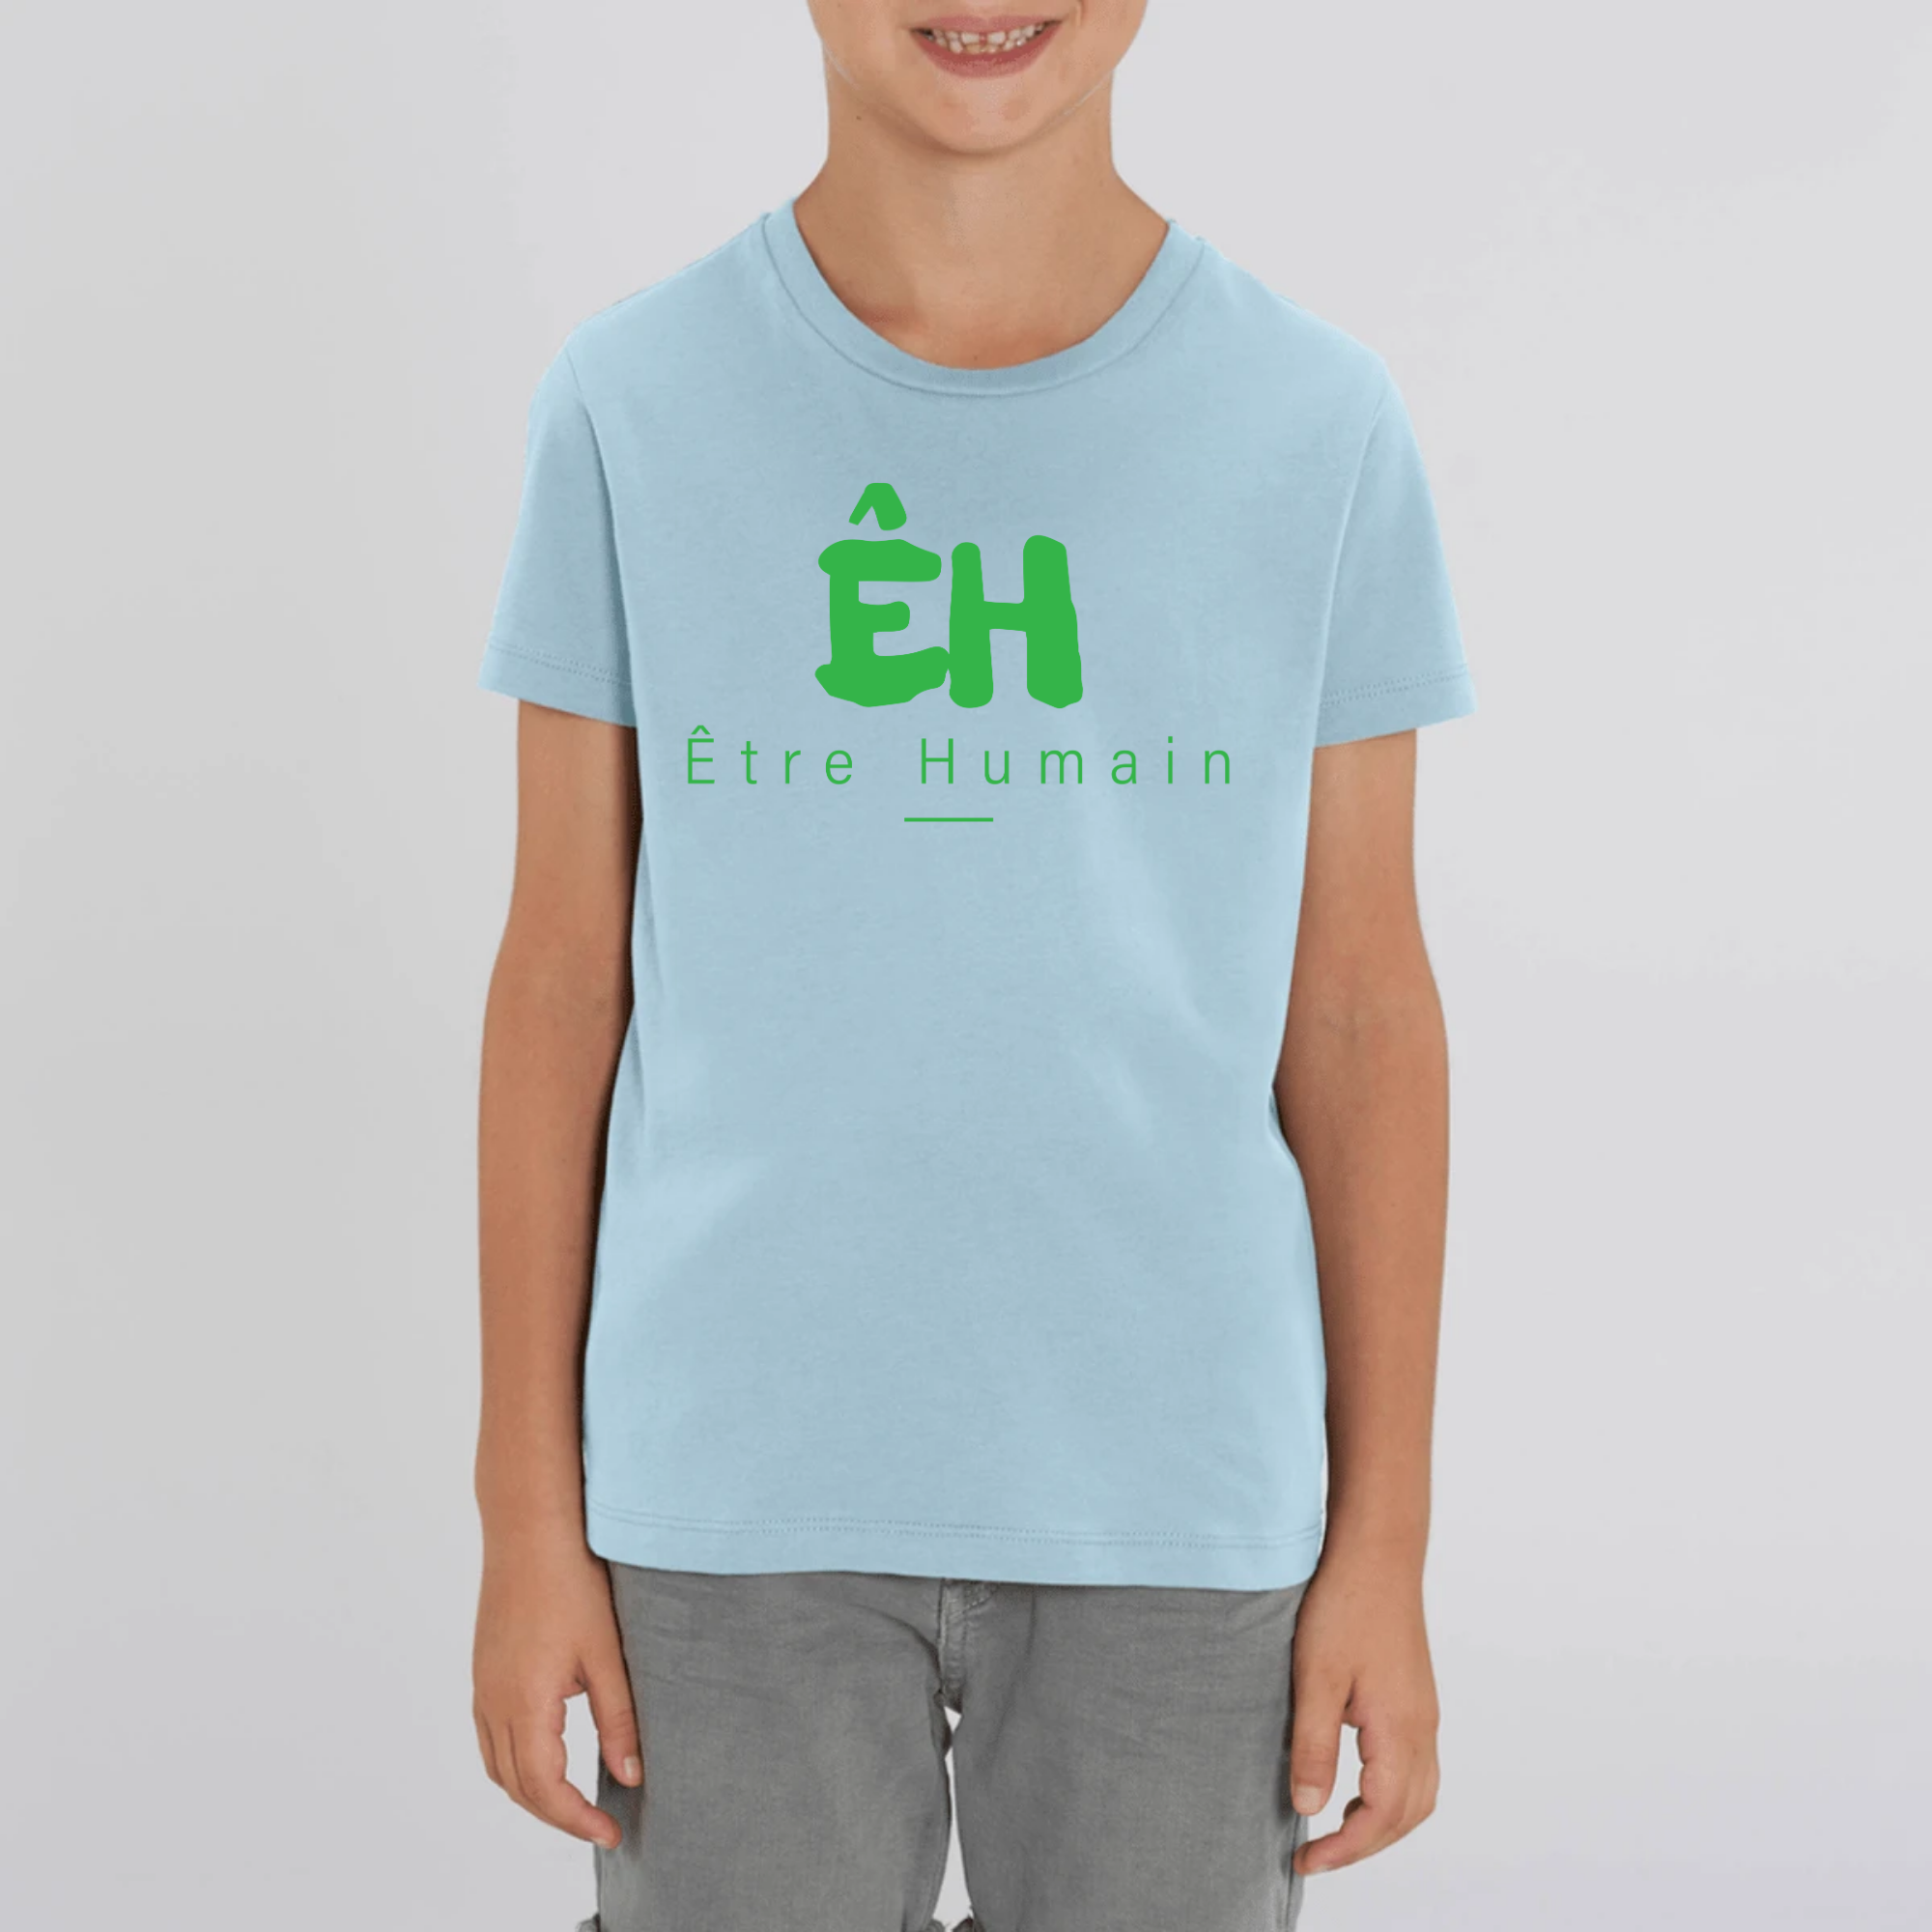 New ÊH Bio // Ecolo-Kids